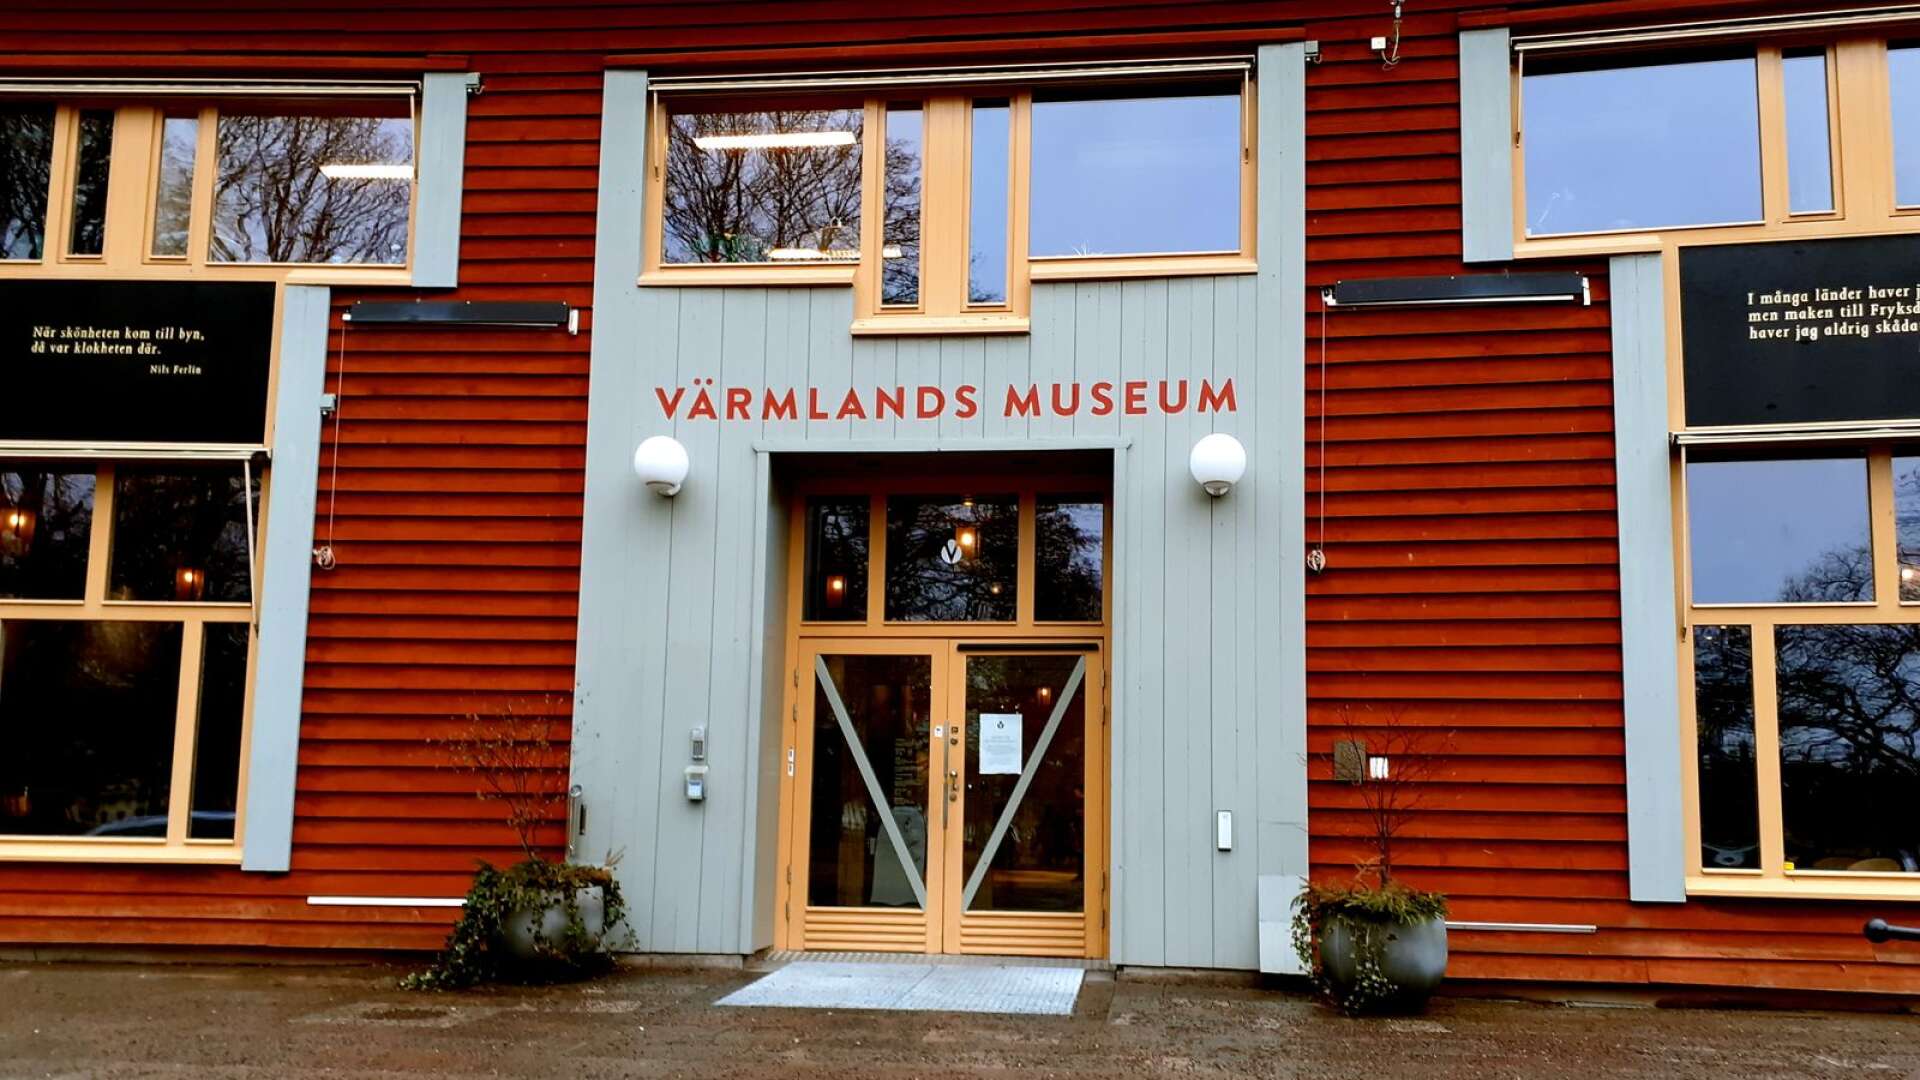 Värmlands museum är pandemistängt och kommer så att förbli på obestämd tid. Museiledningen avvaktar tydligare besked om riktlinjer.